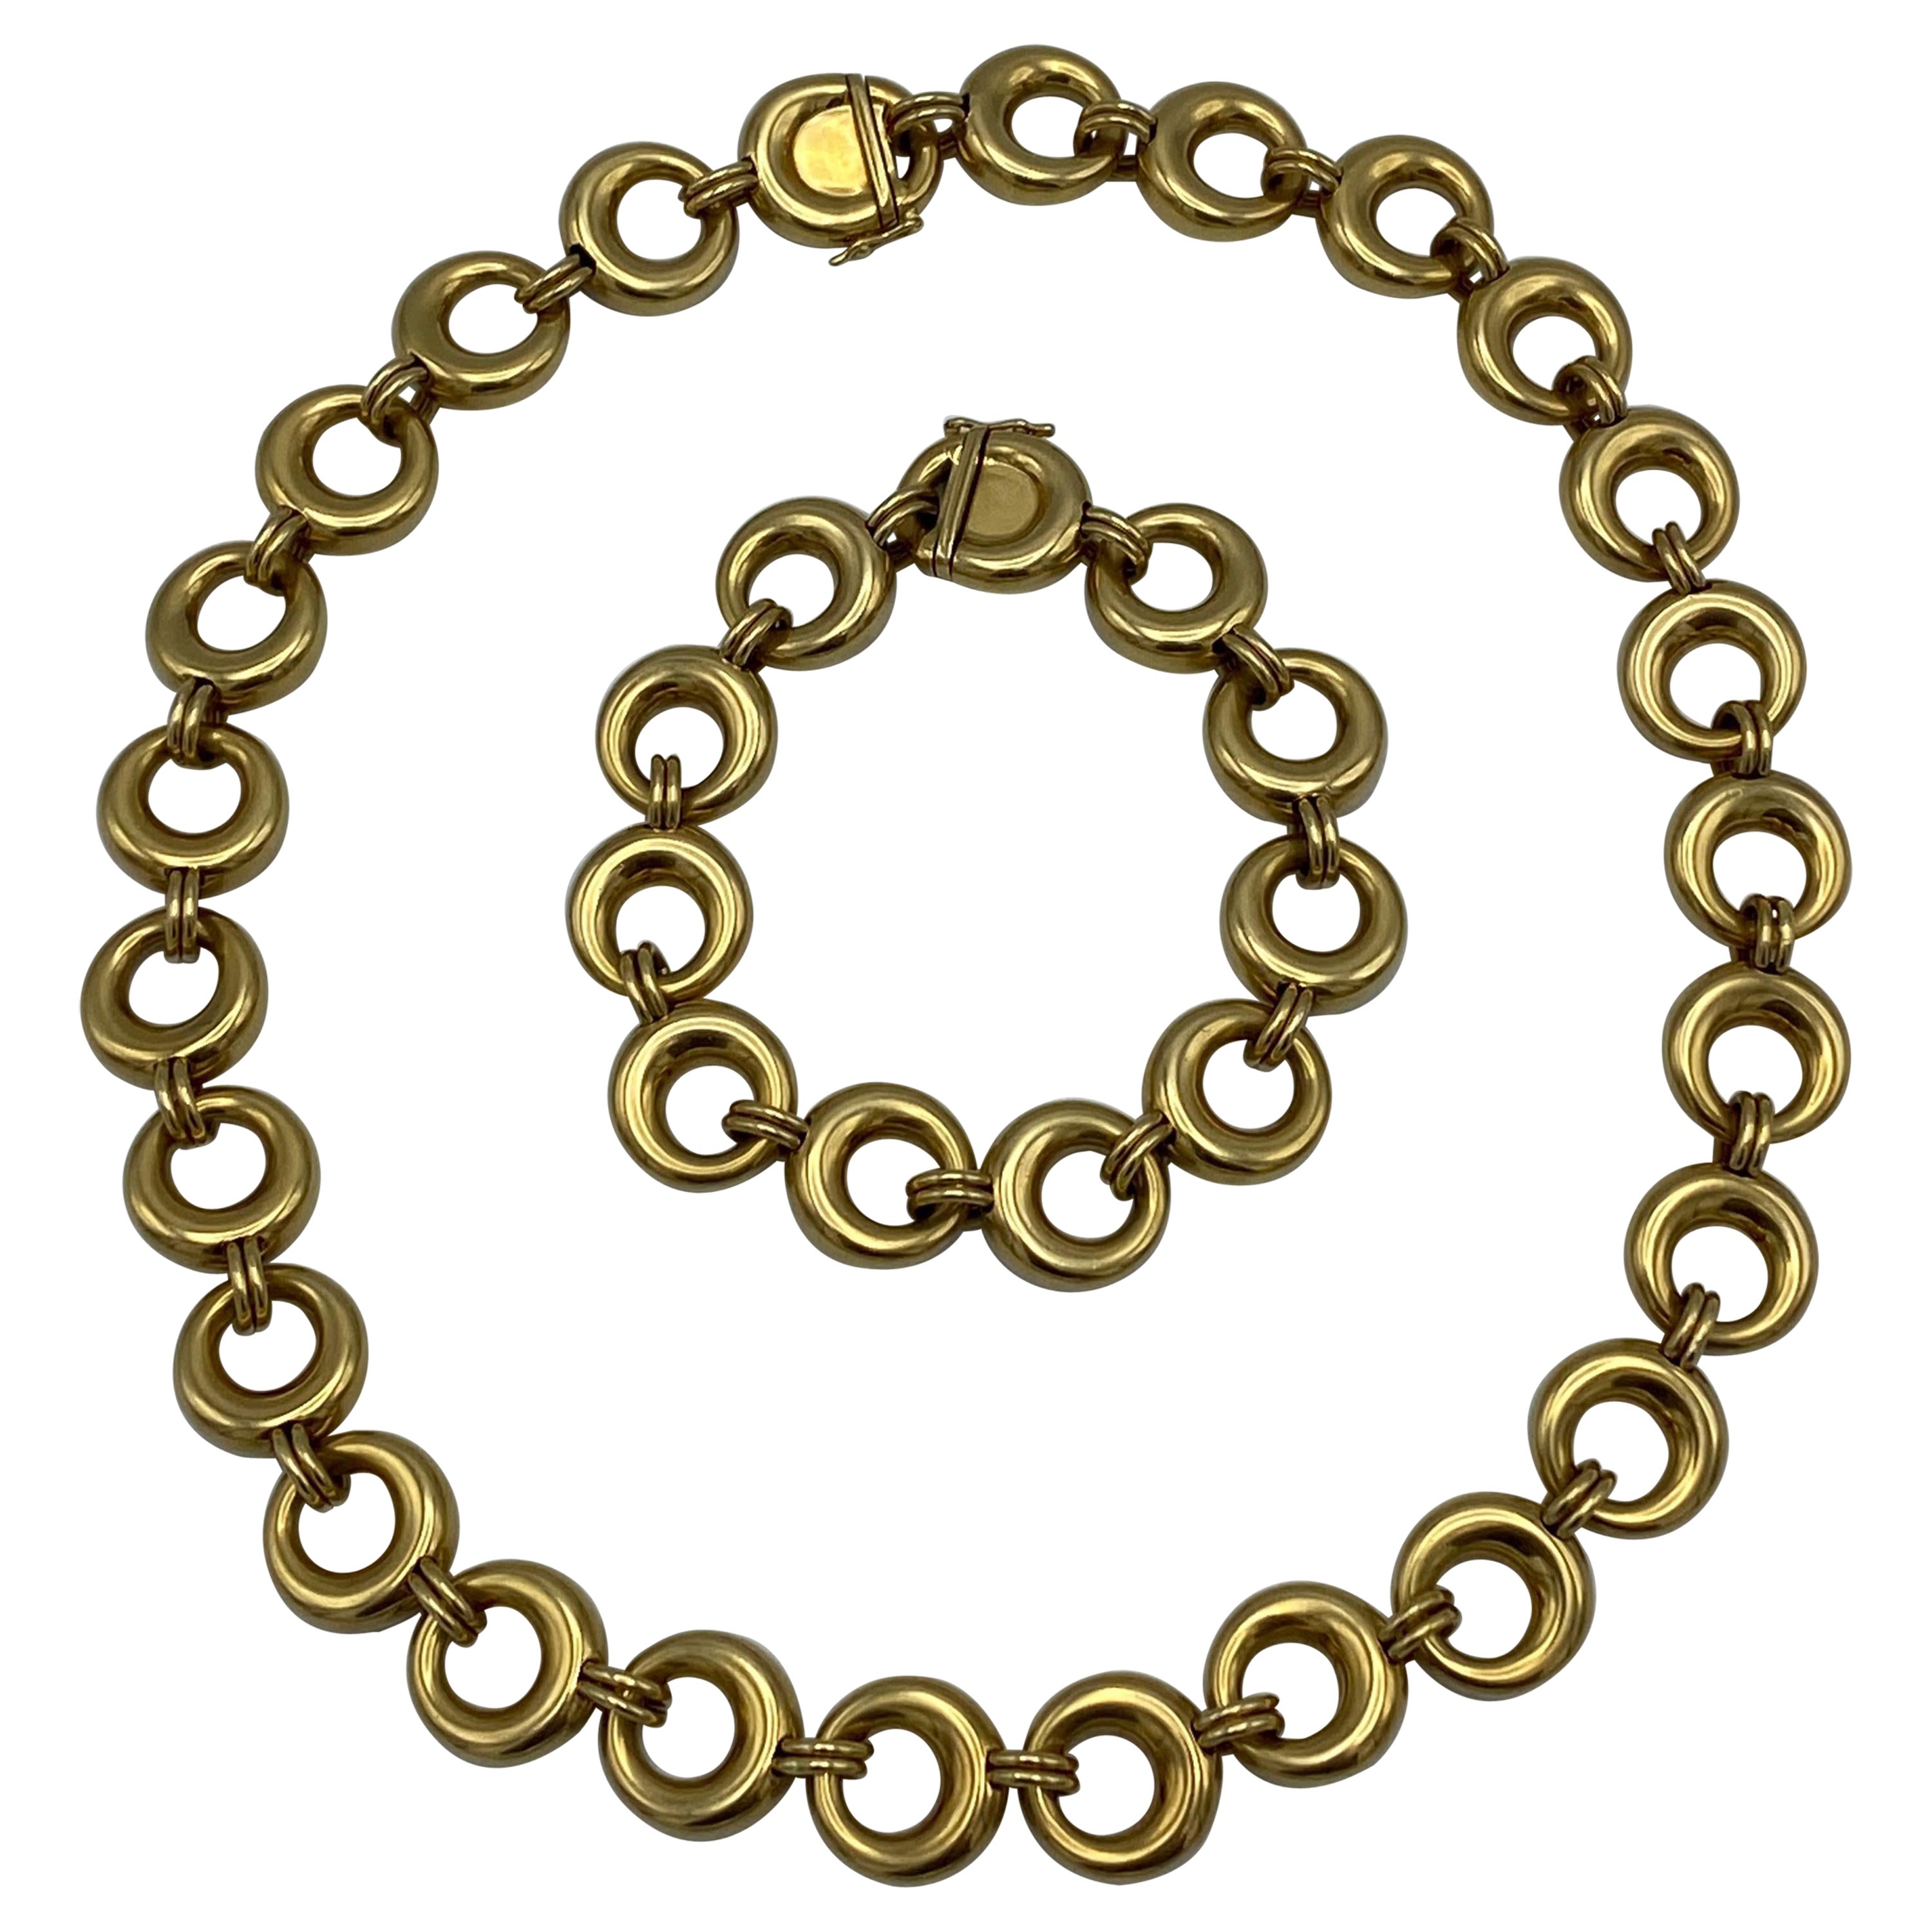 Vintage Chaumet Paris Yellow Gold Link Bracelet and Necklace Set